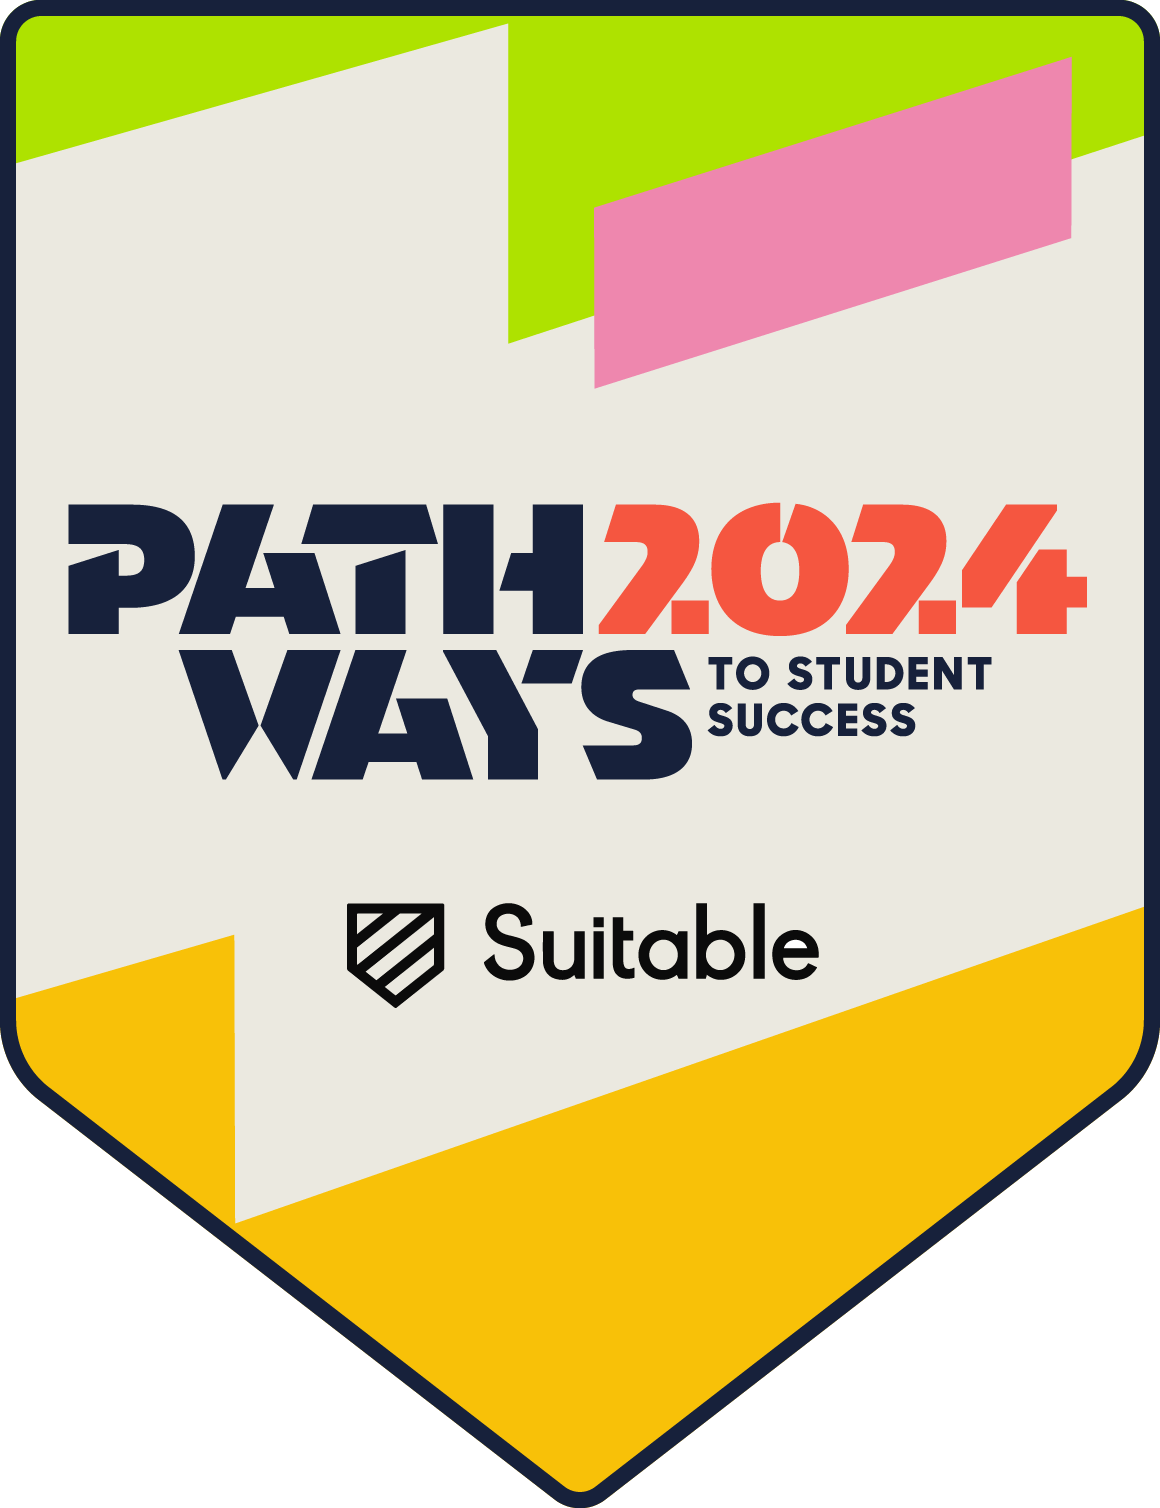 PathwaysBadge - Outstanding New Program - Best in Class@4x